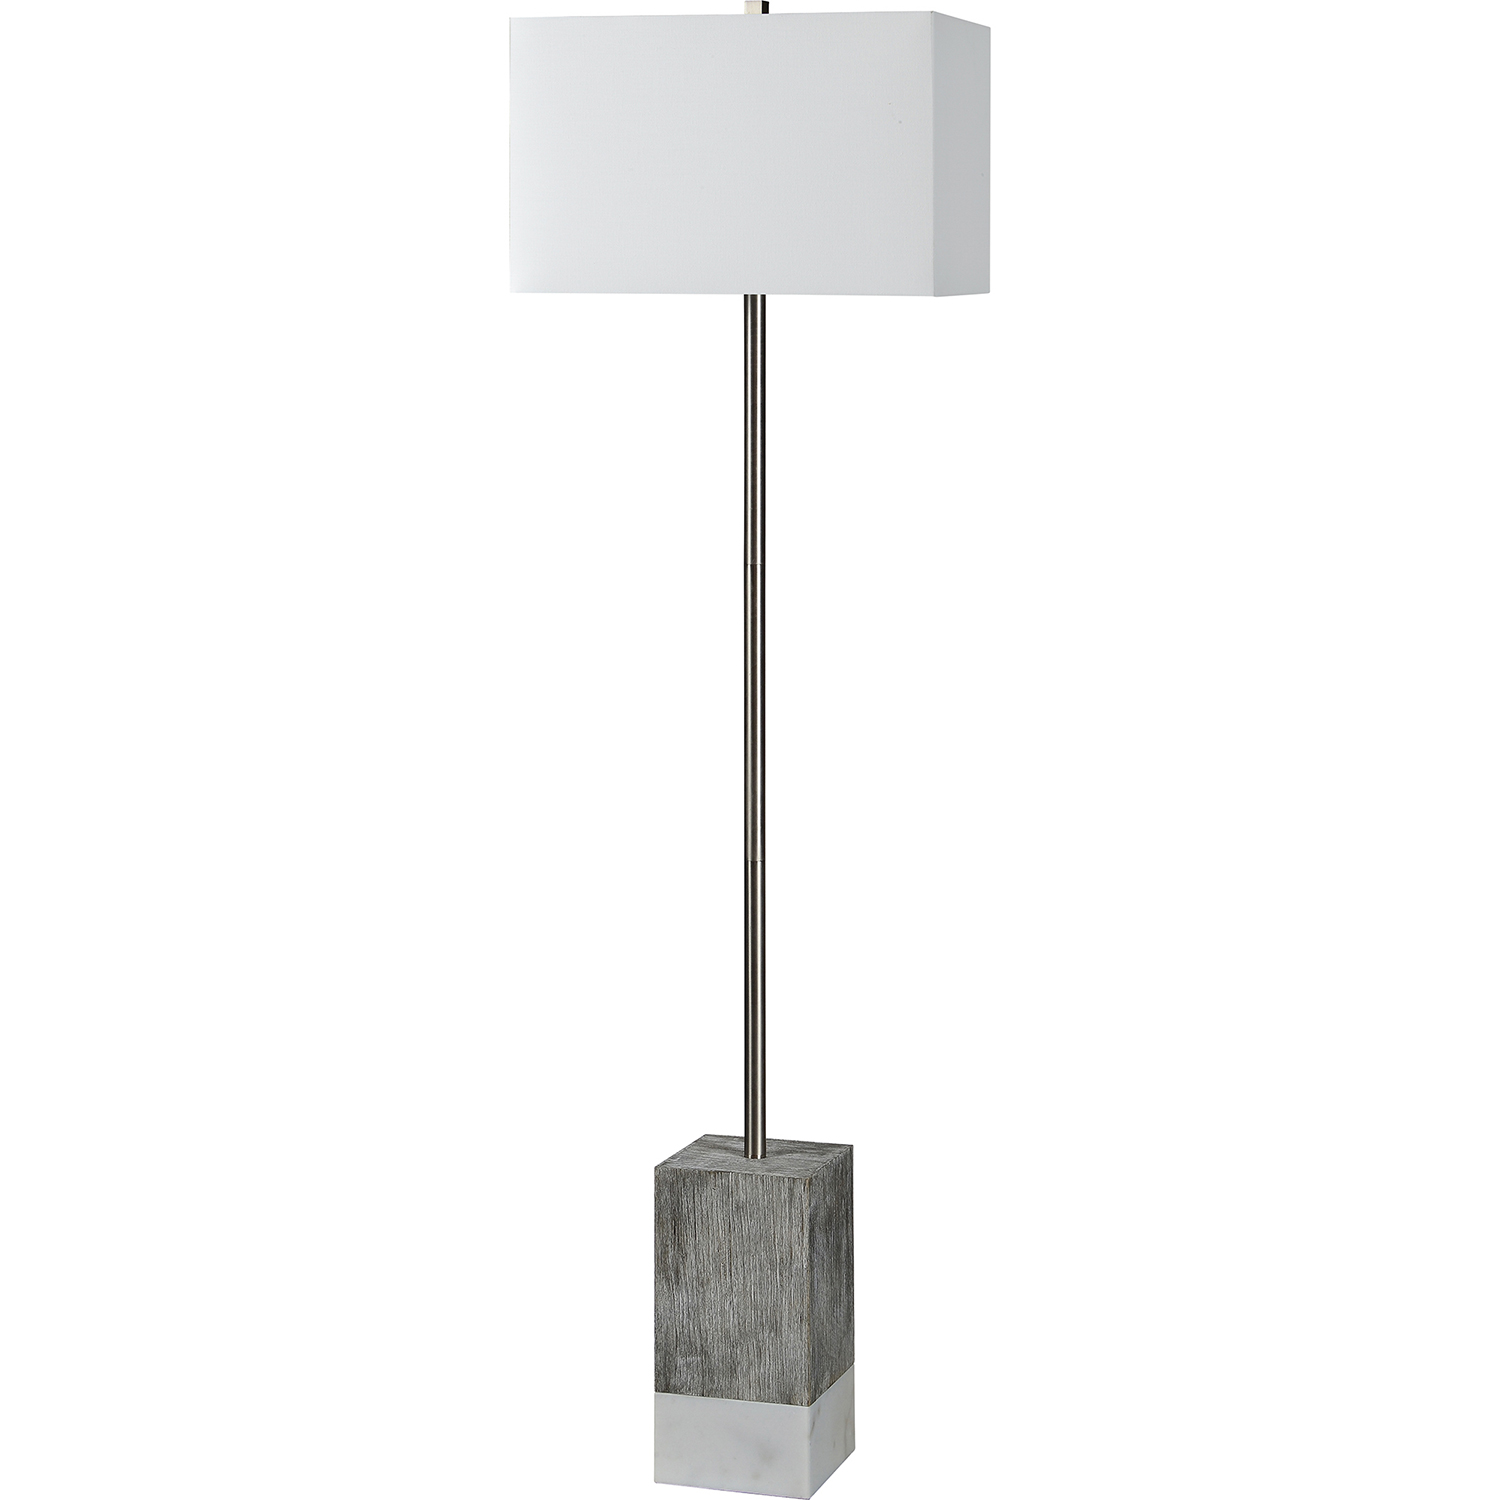 Ren-Wil Steward Floor Lamp - Satin Nickel/White Marble/White Wash